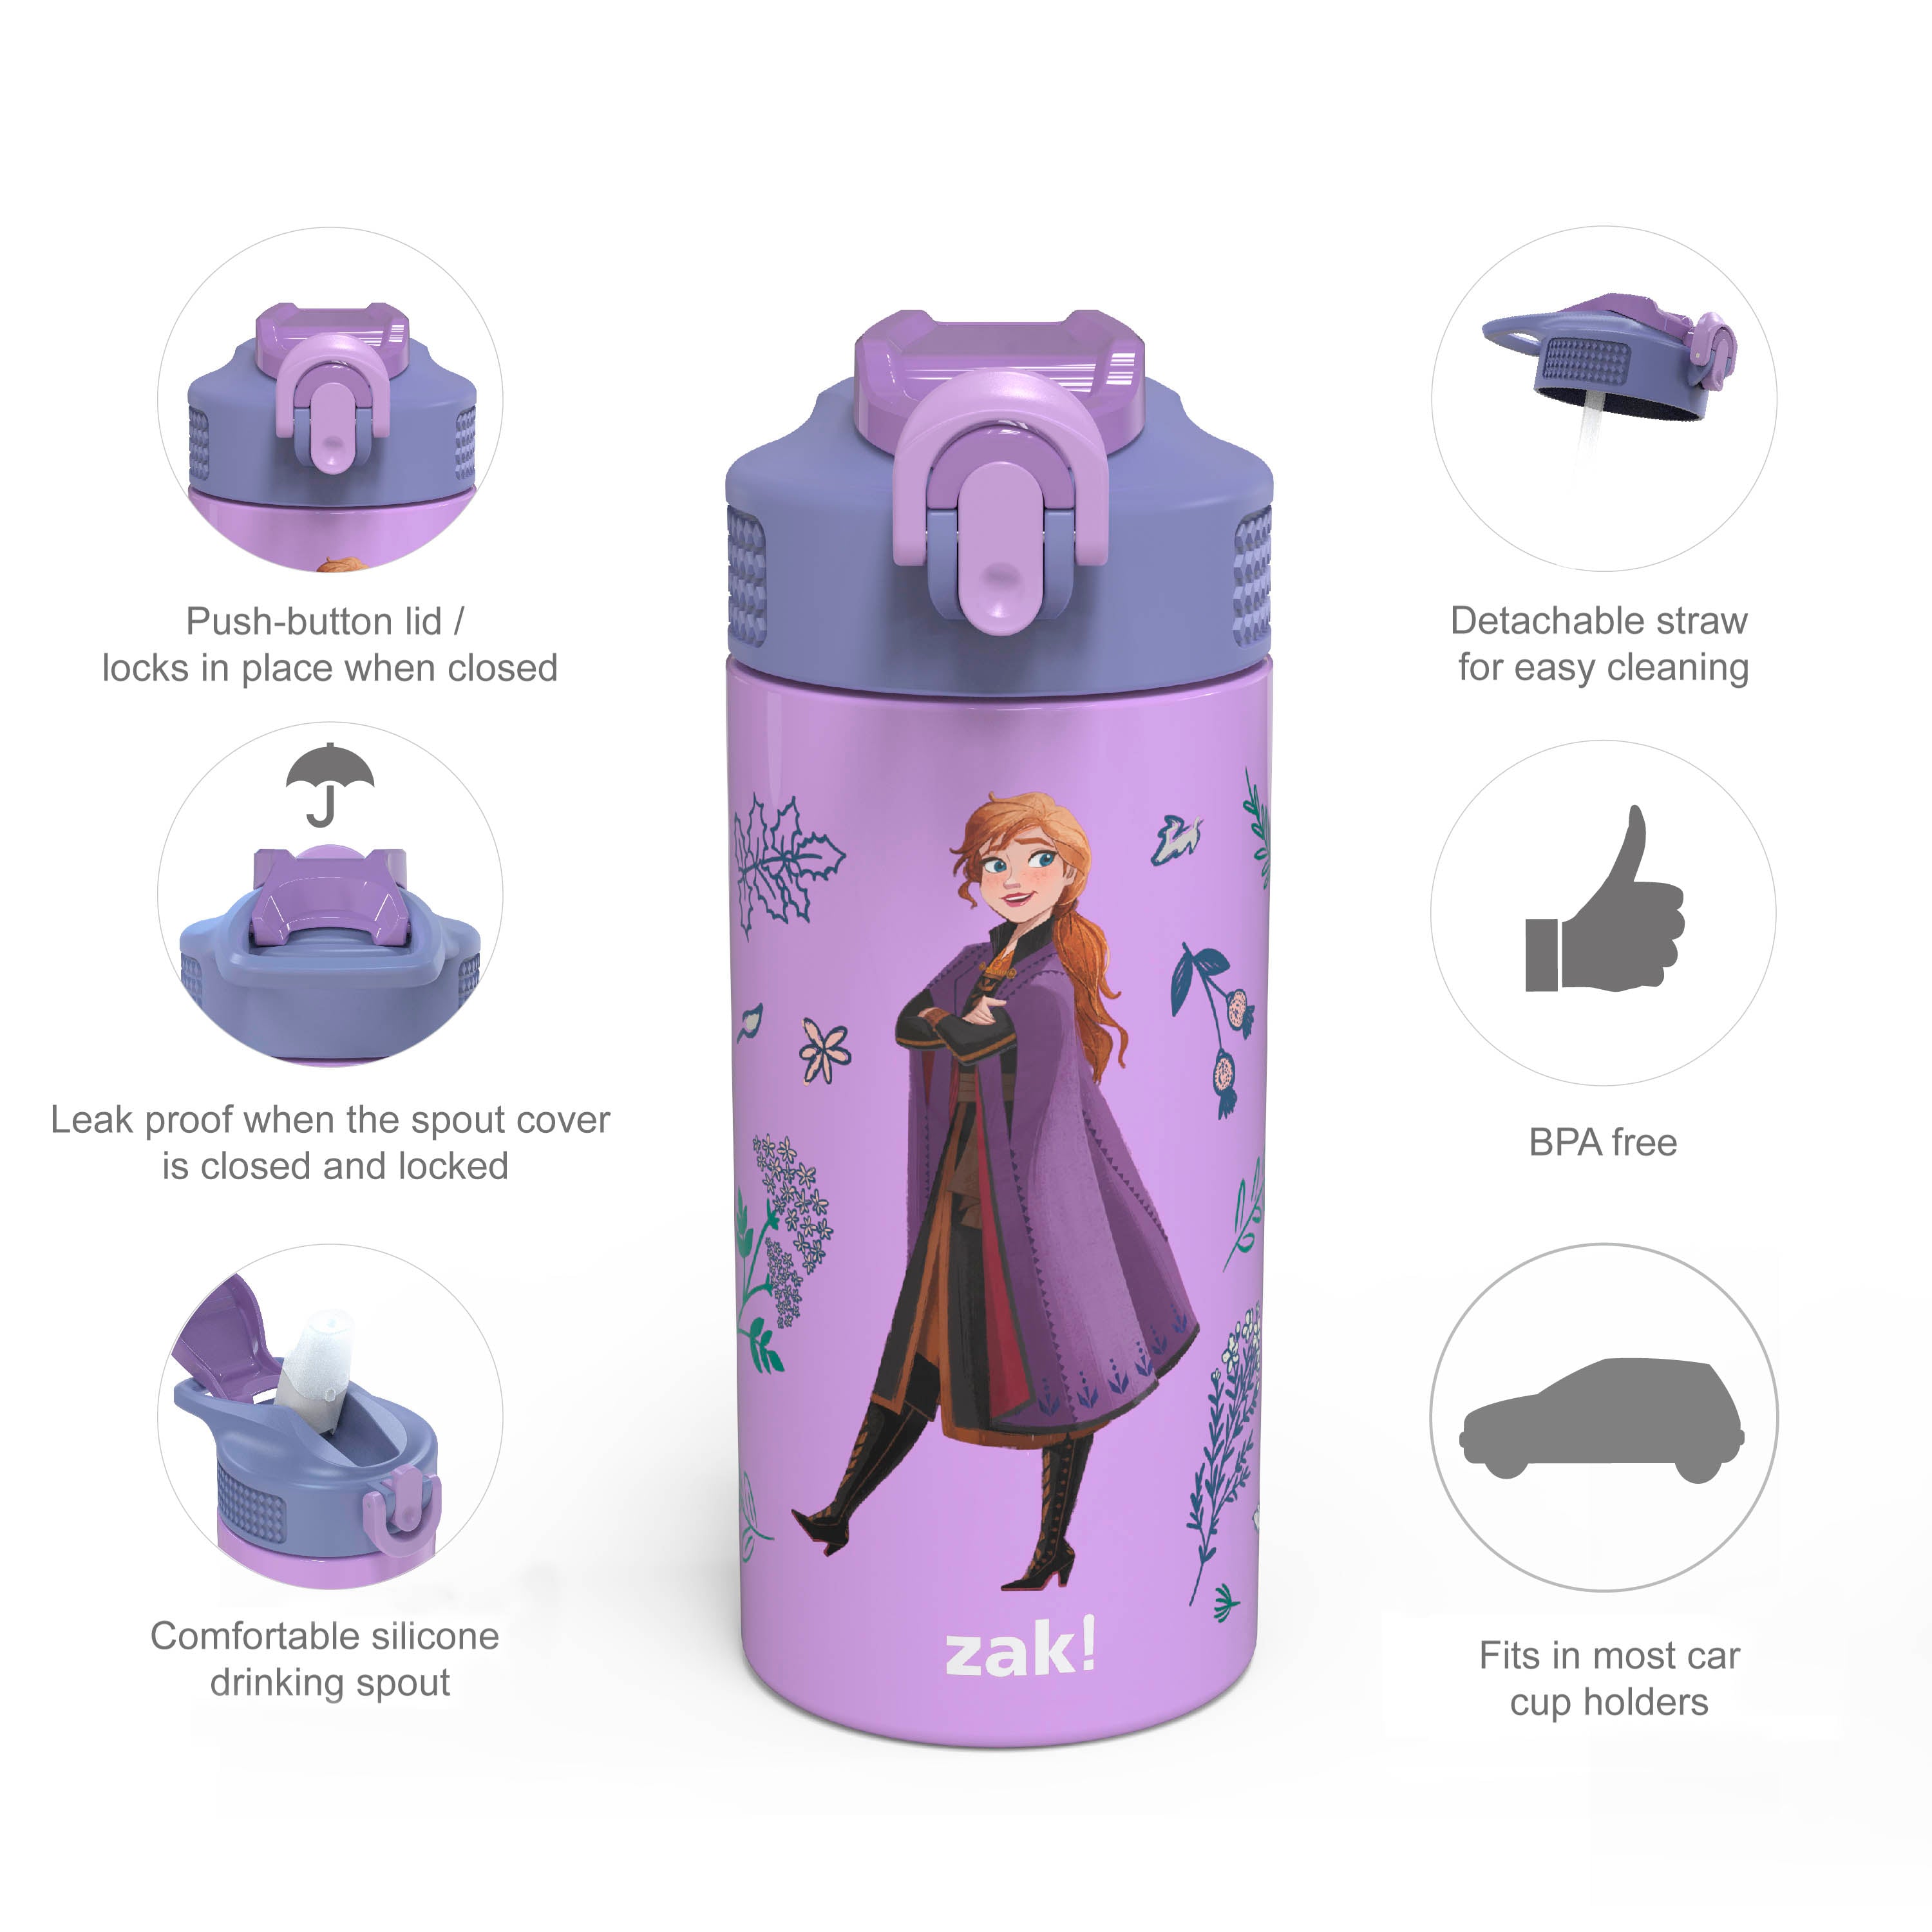 Disney Frozen Water Bottle Key Chain